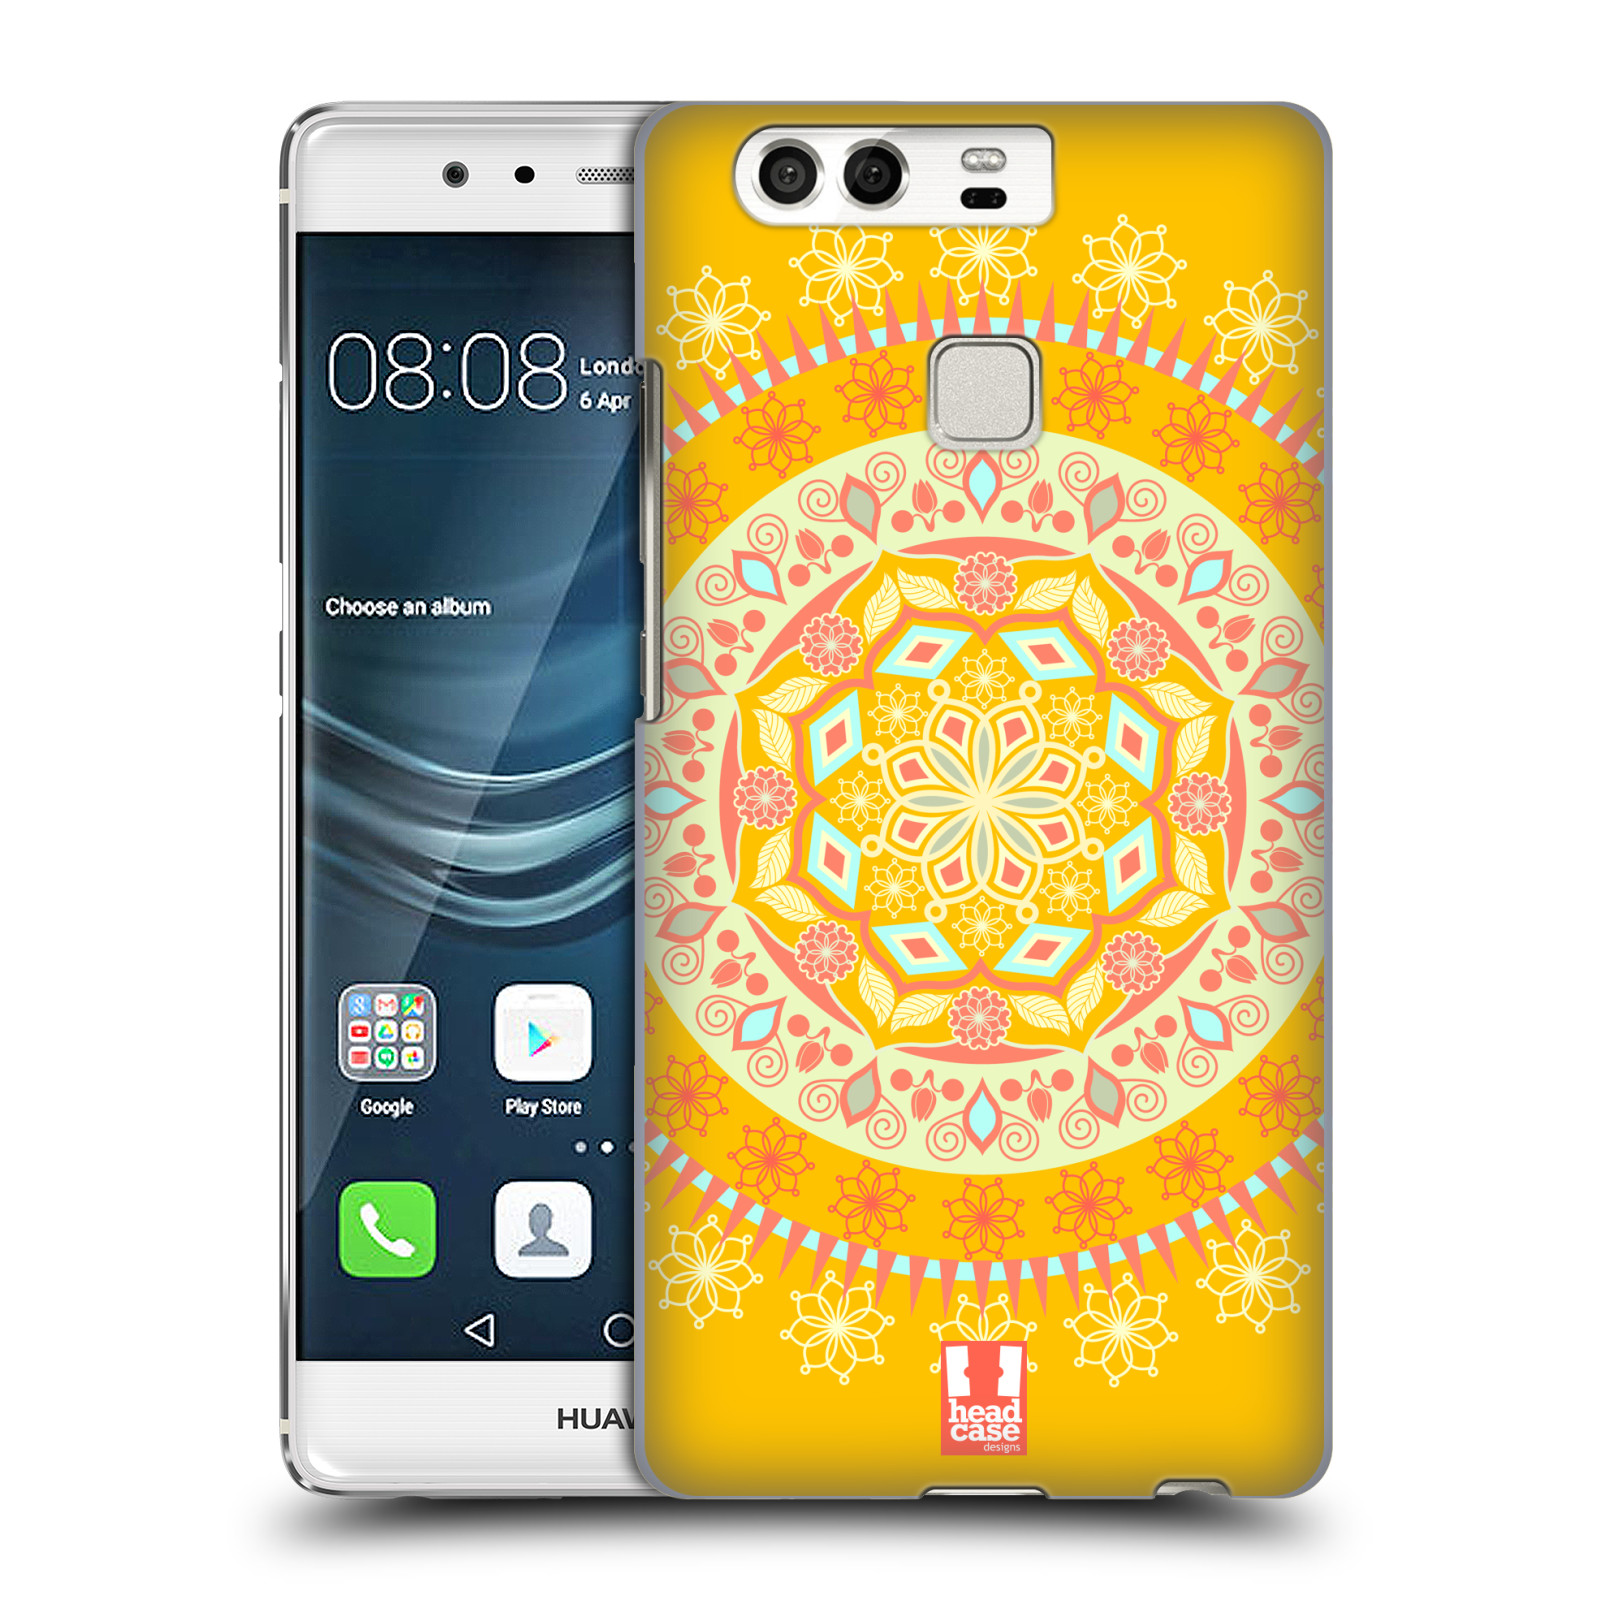 HEAD CASE plastový obal na mobil Huawei P9 / P9 DUAL SIM vzor Indie Mandala slunce barevný motiv ŽLUTÁ